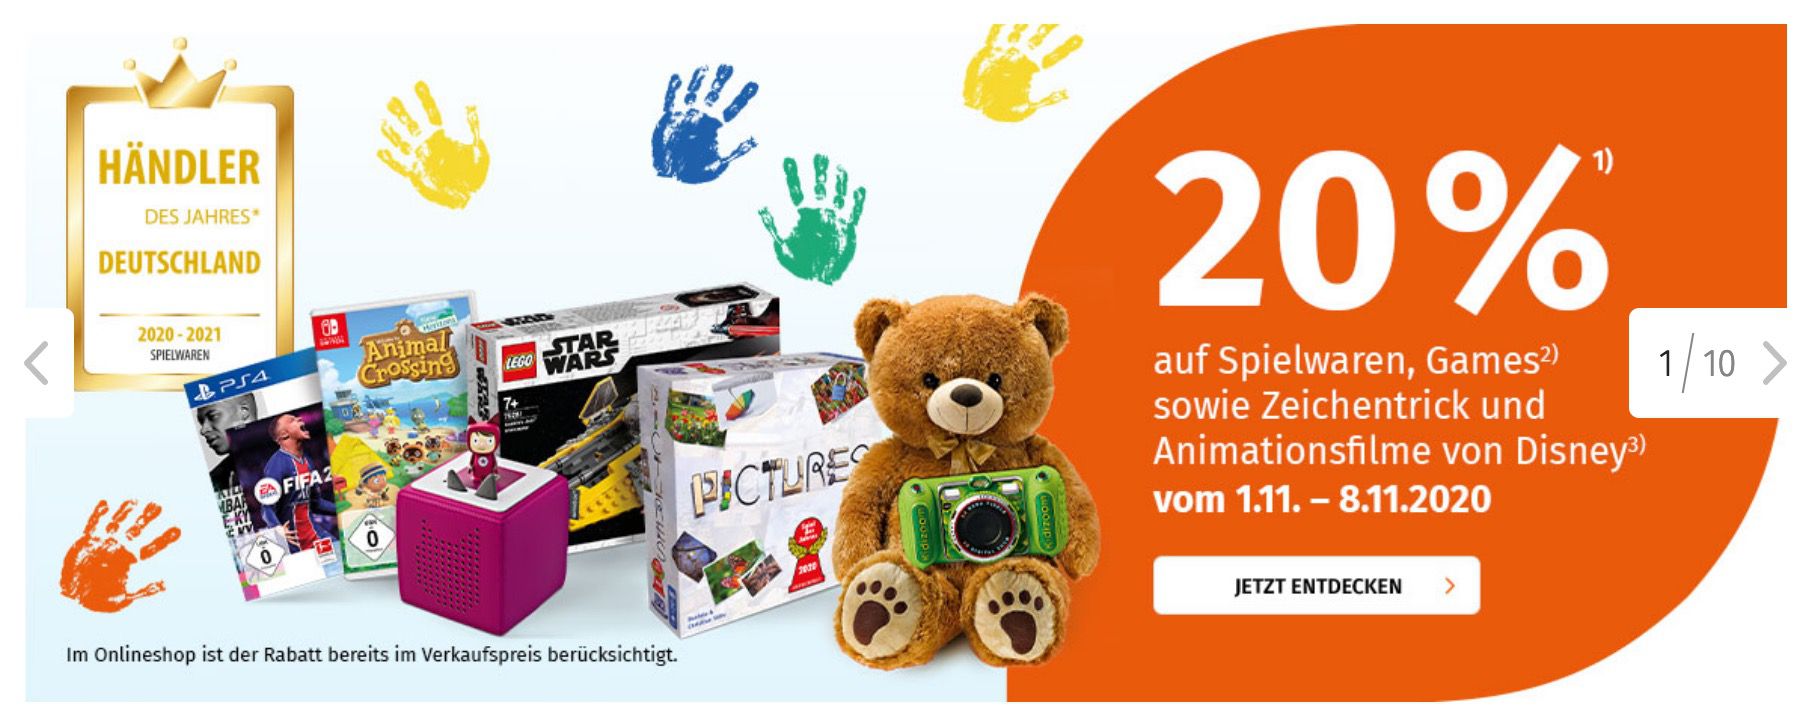 20% Rabatt auf Games und Spielwaren im Müller Online Shop